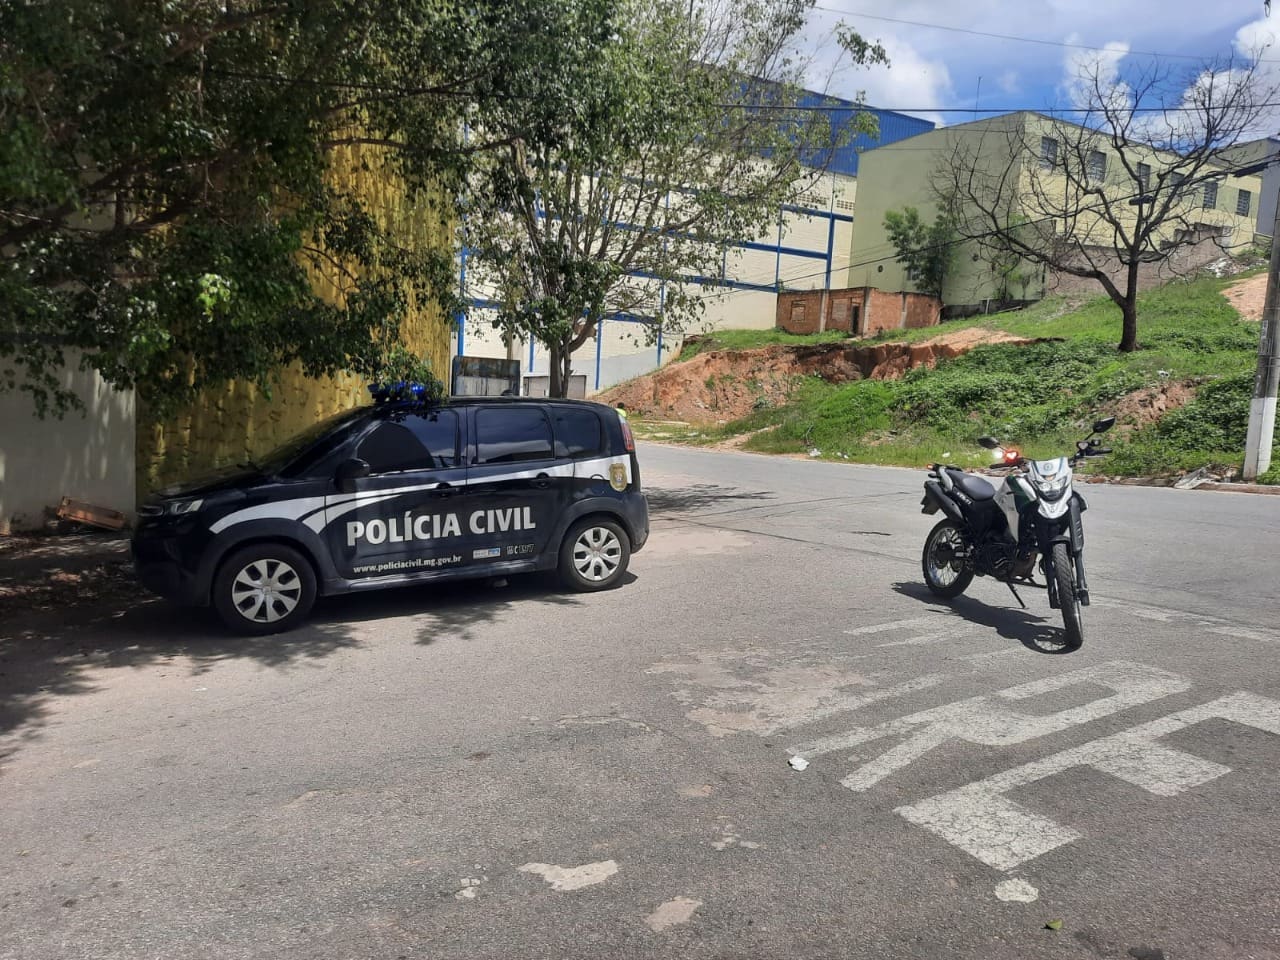 Nova Serrana: PCMG e Guarda Municipal apreendem drogas em carro clonado